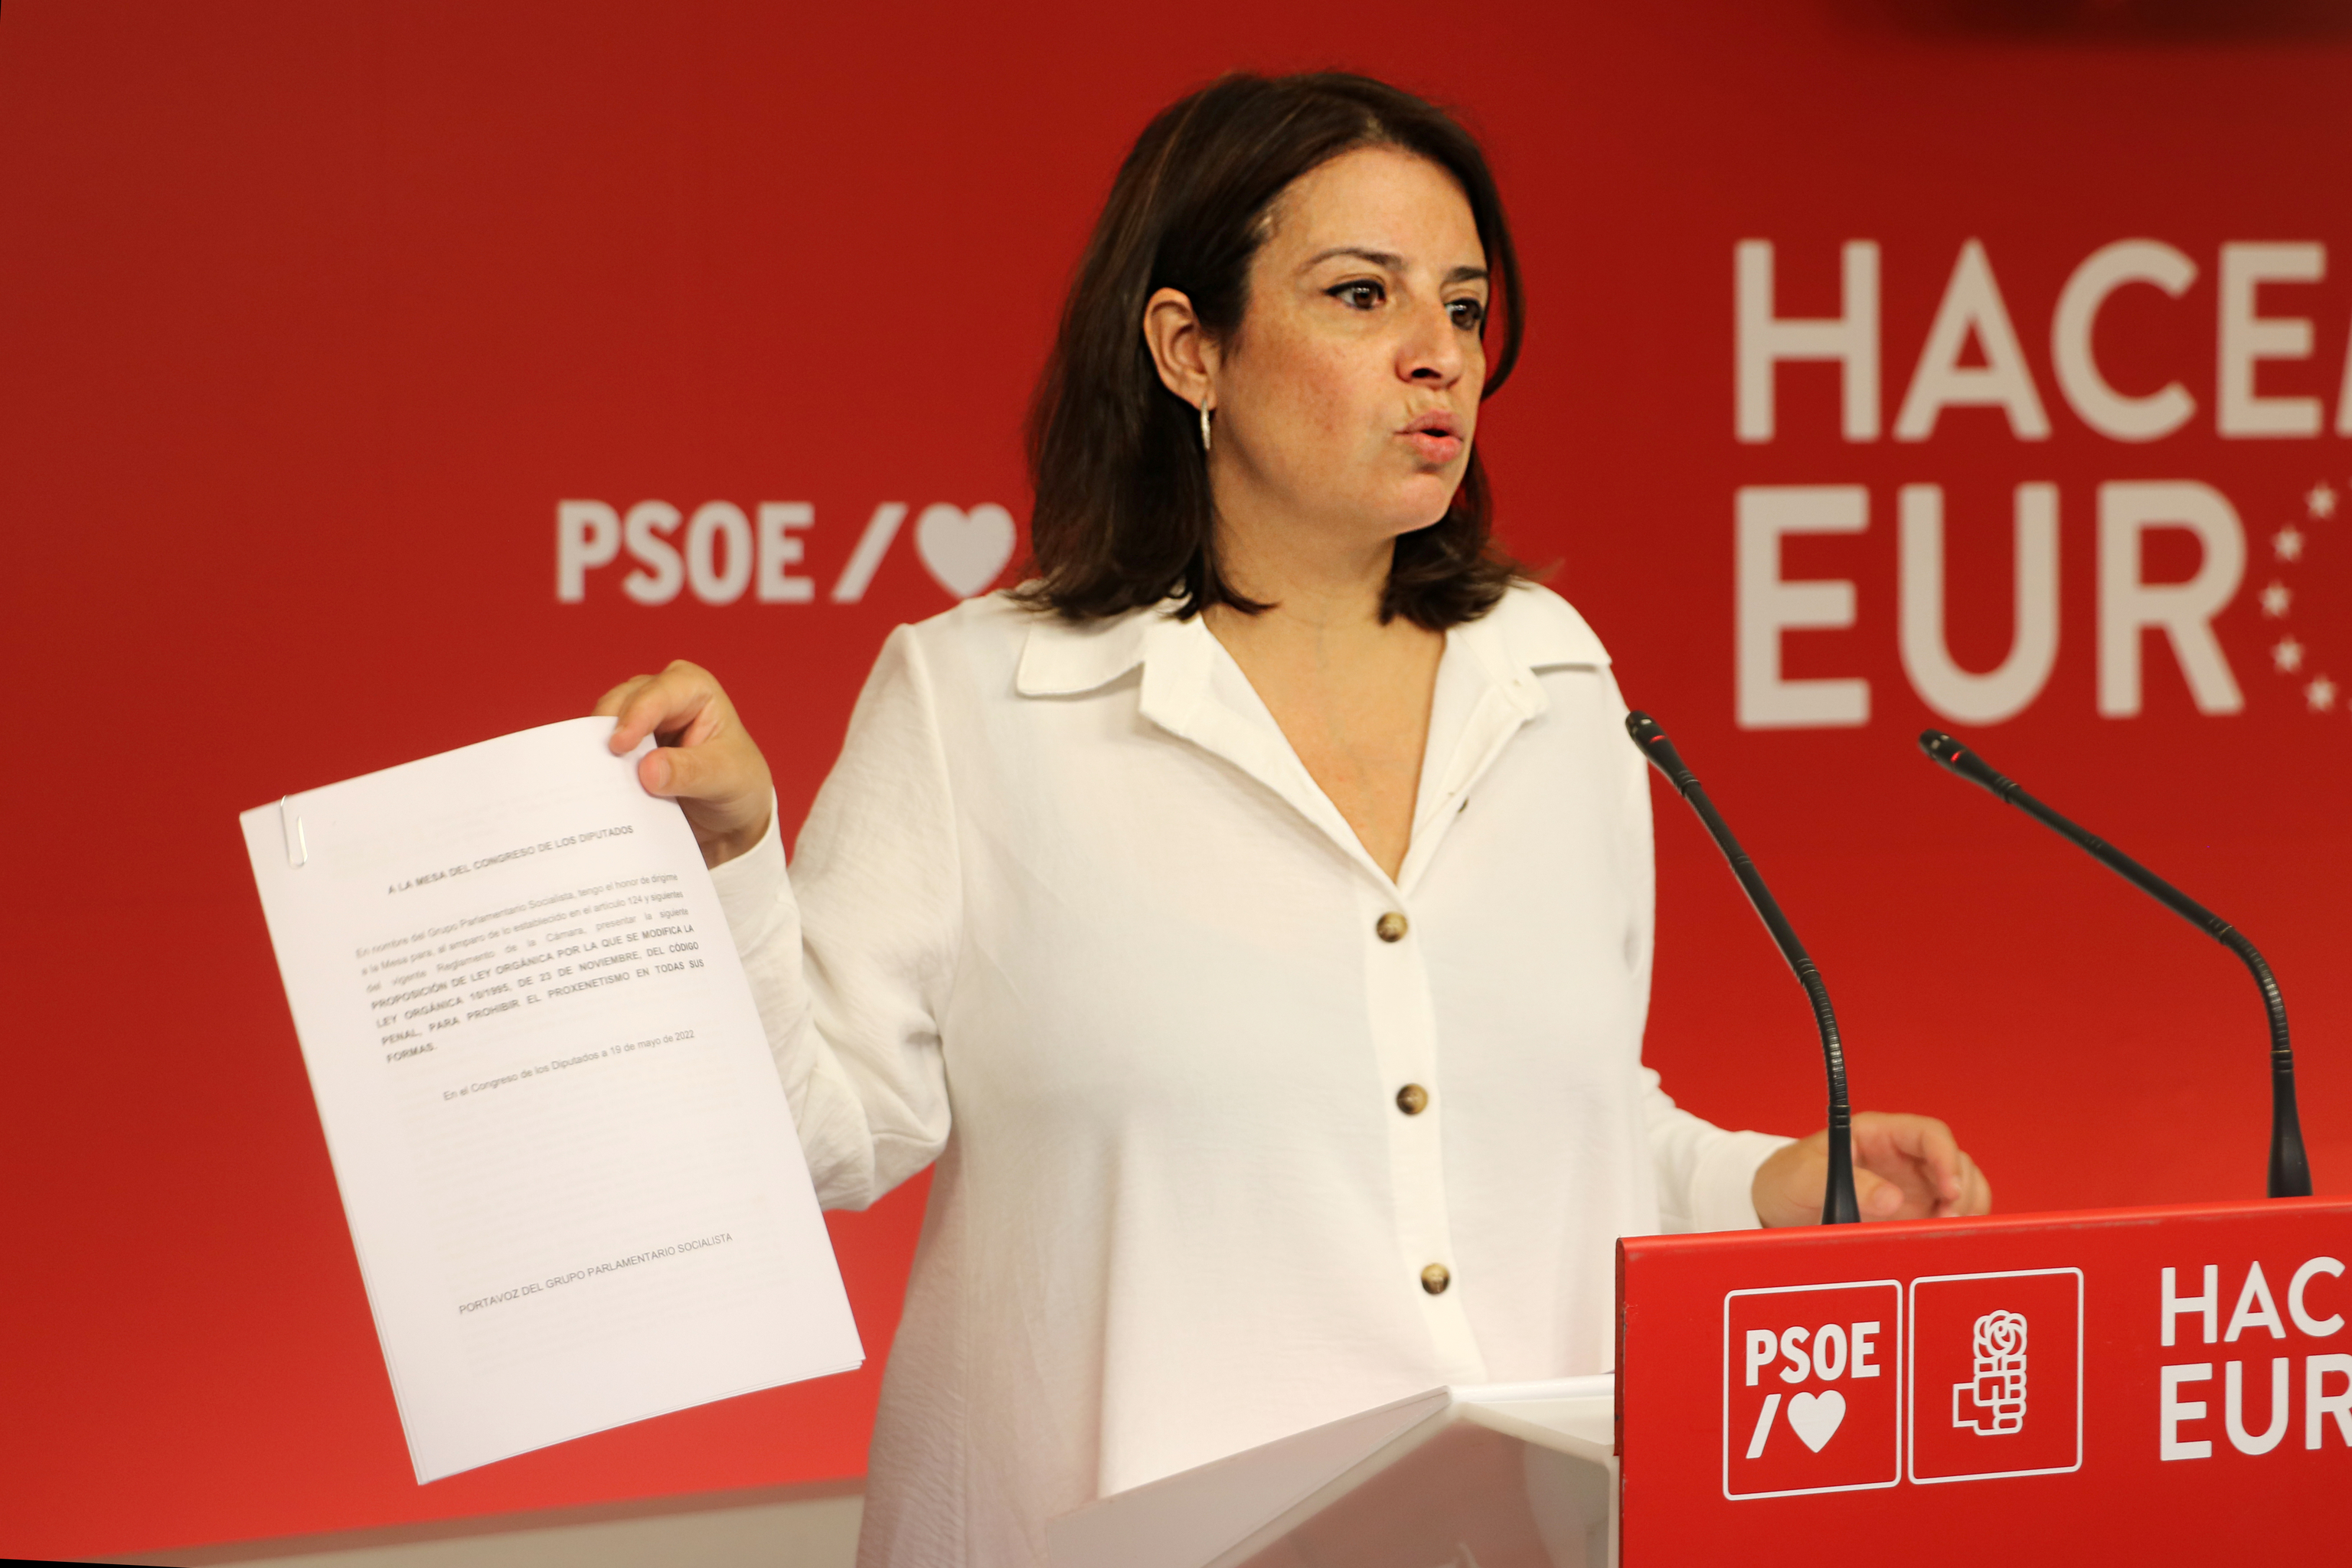 PSOE Deputy Secretary-General Adriana Lastra at a news conference.